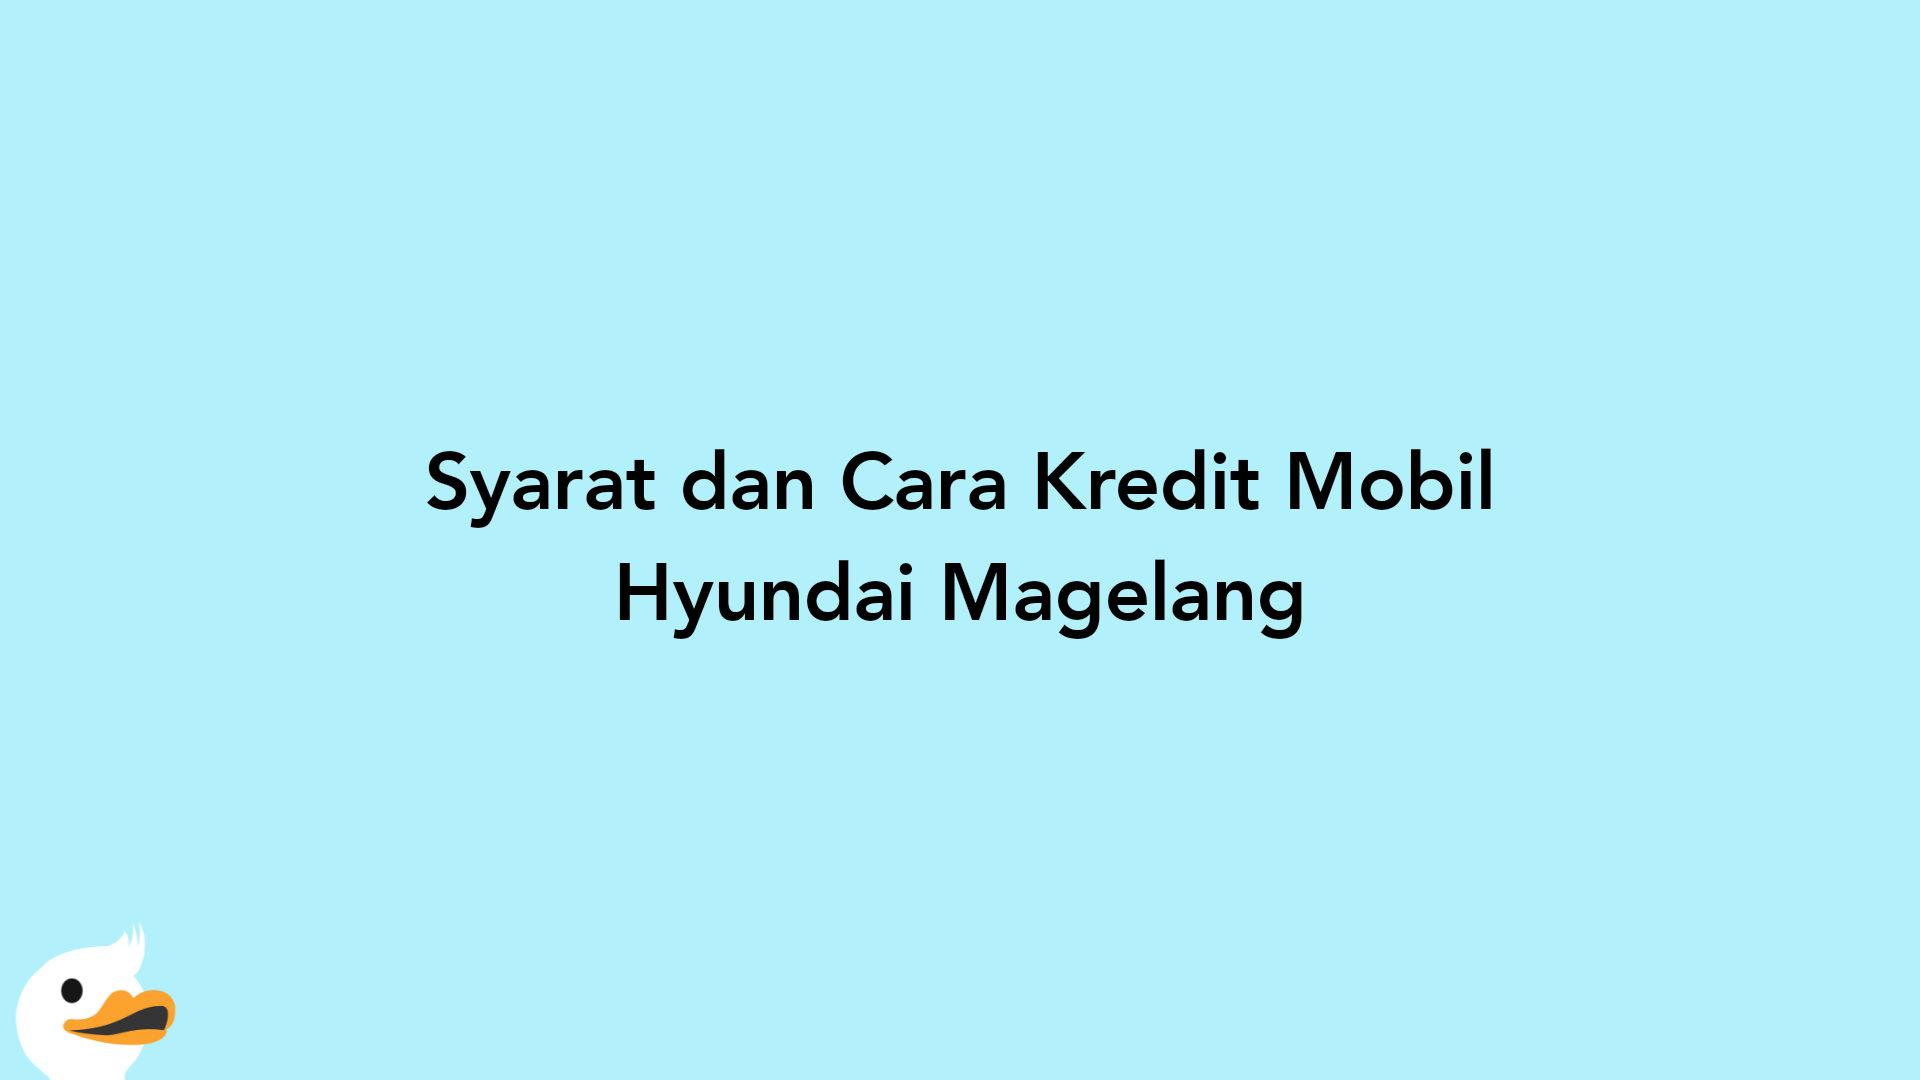 Syarat dan Cara Kredit Mobil Hyundai Magelang